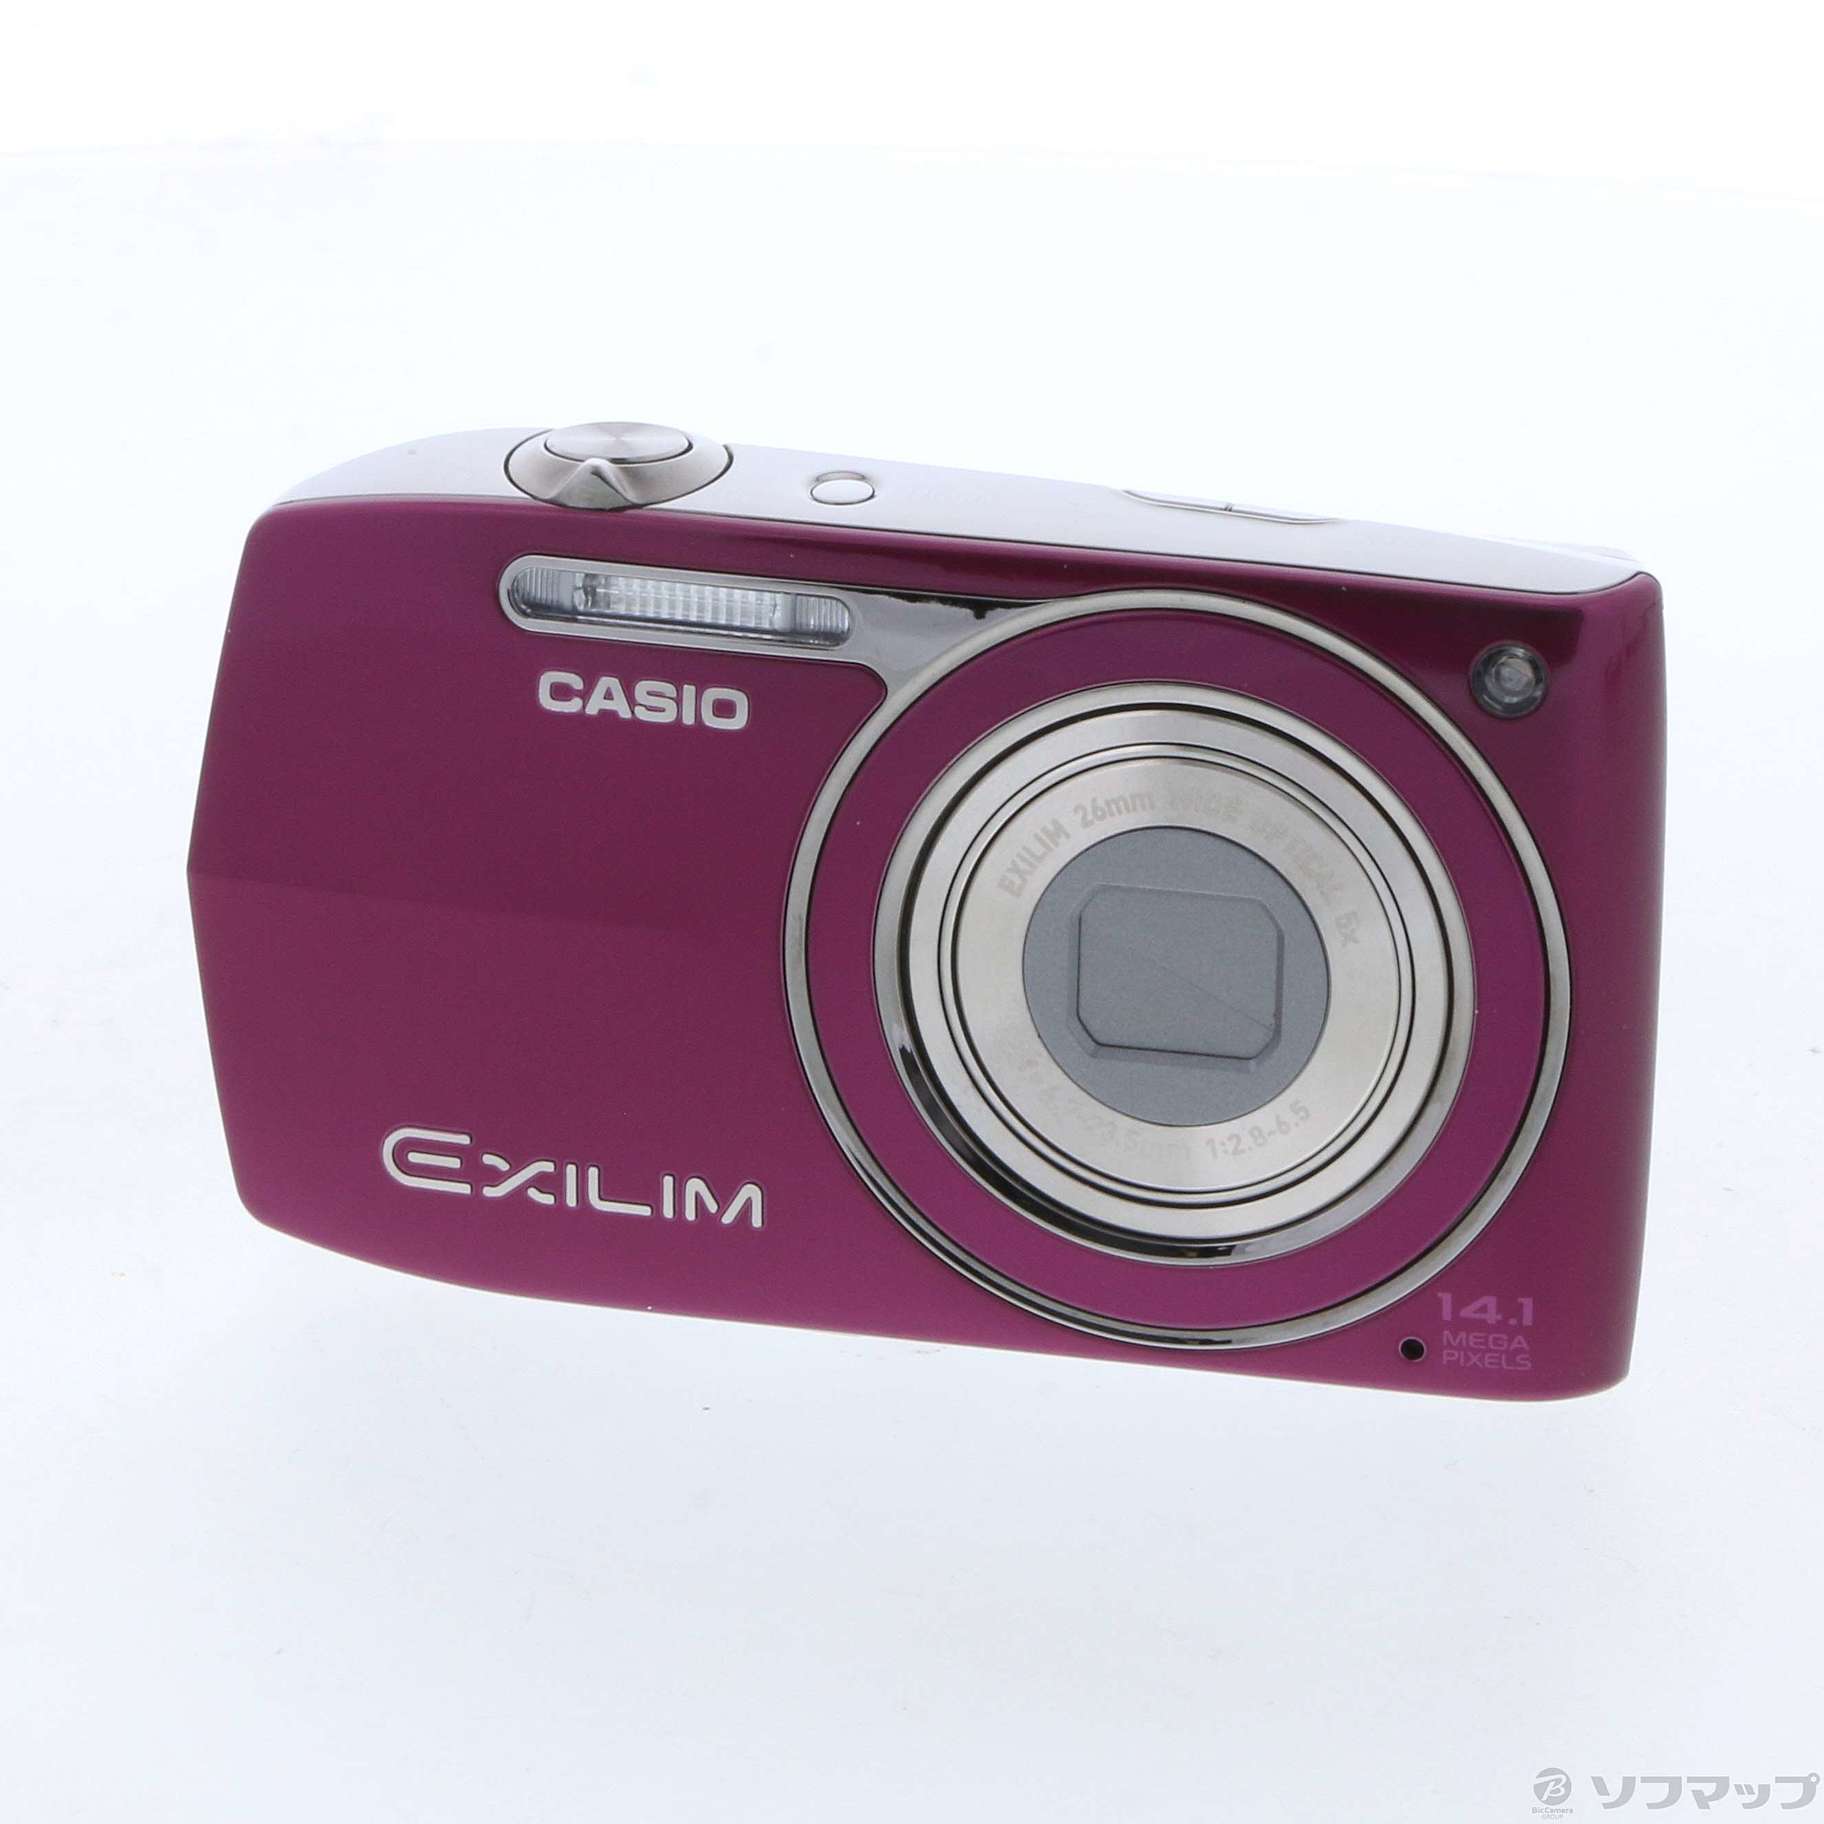 CASIO デジタルカメラ EXILIM Z2300 ピンク EX-Z2300PK wgteh8f